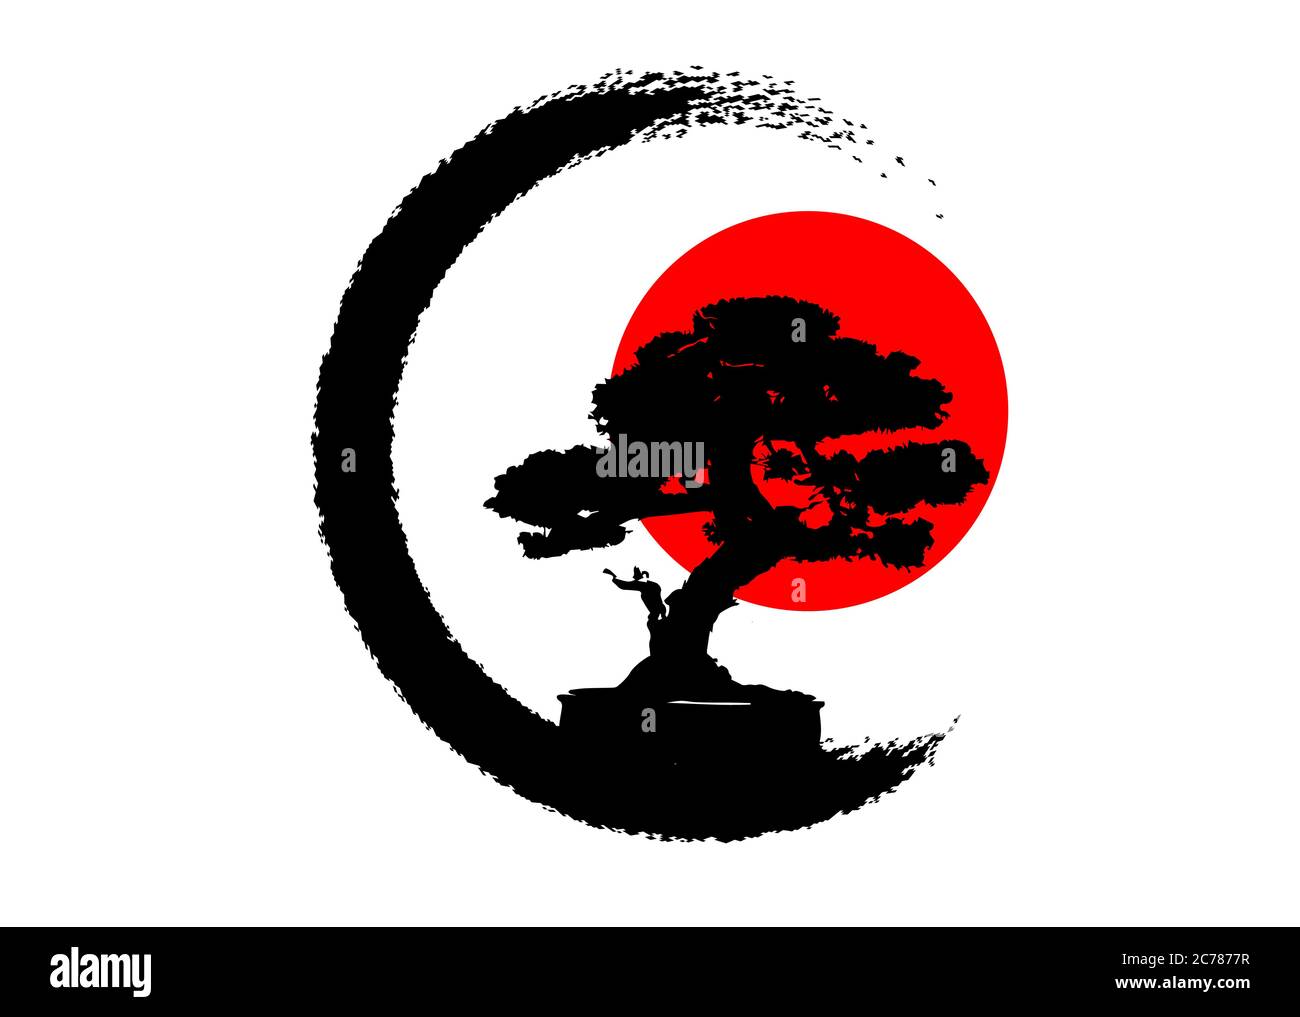 Logo de bonsaï japonais, icônes de silhouette de plante noire sur fond blanc, silhouette écologique verte de bonsaï et coucher de soleil rouge. Image détaillée Illustration de Vecteur